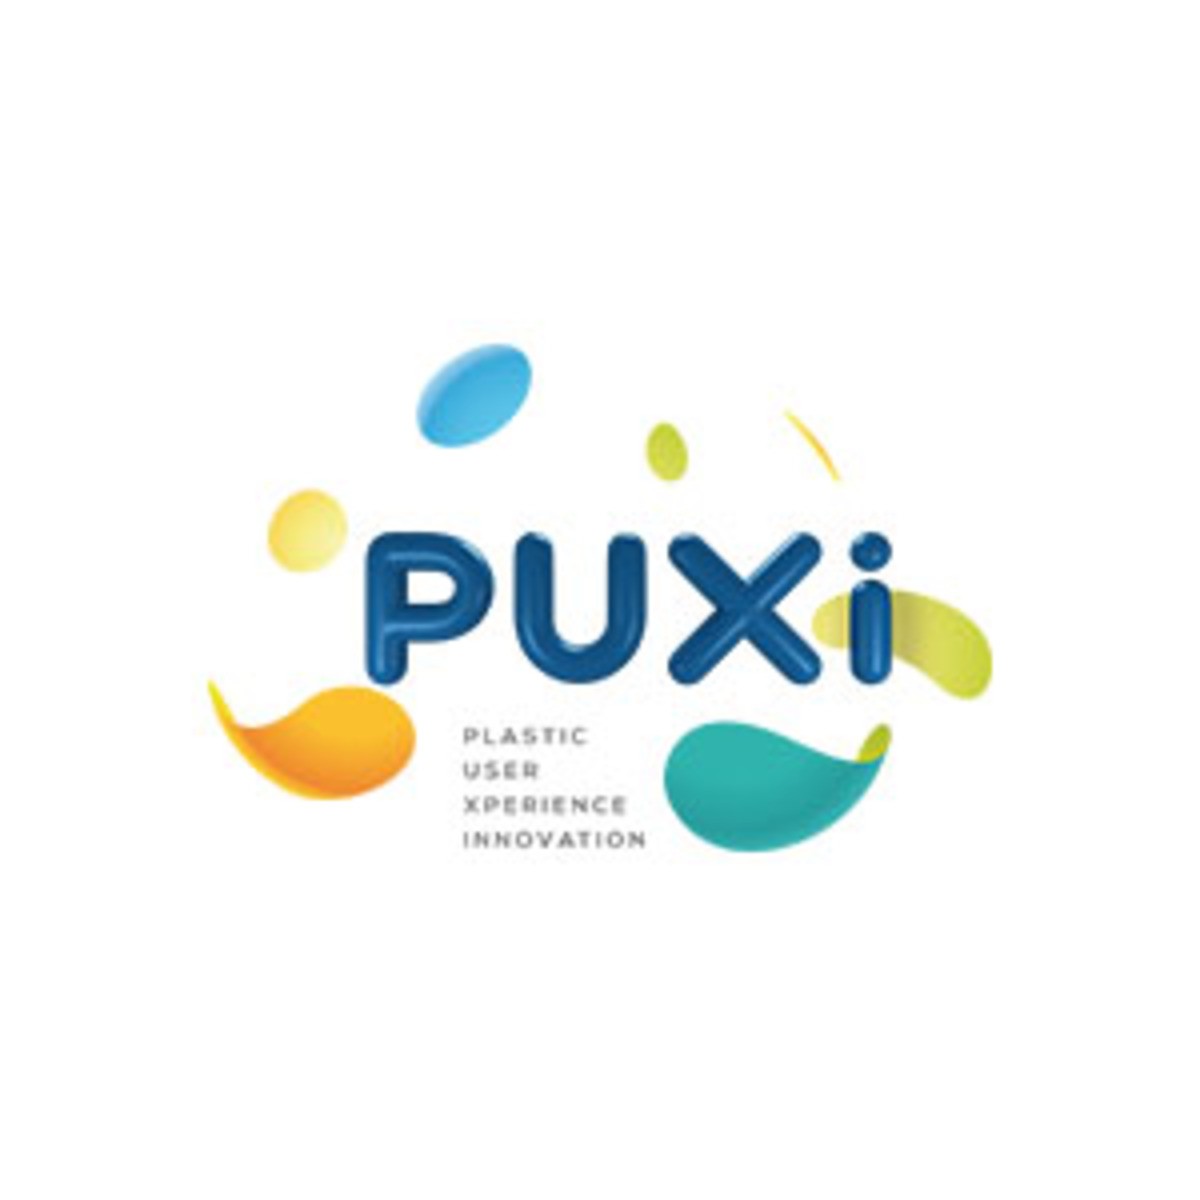 L'Economie Circulaire et la filière plasturgie - retour sur la tournée PUXI décembre 2021